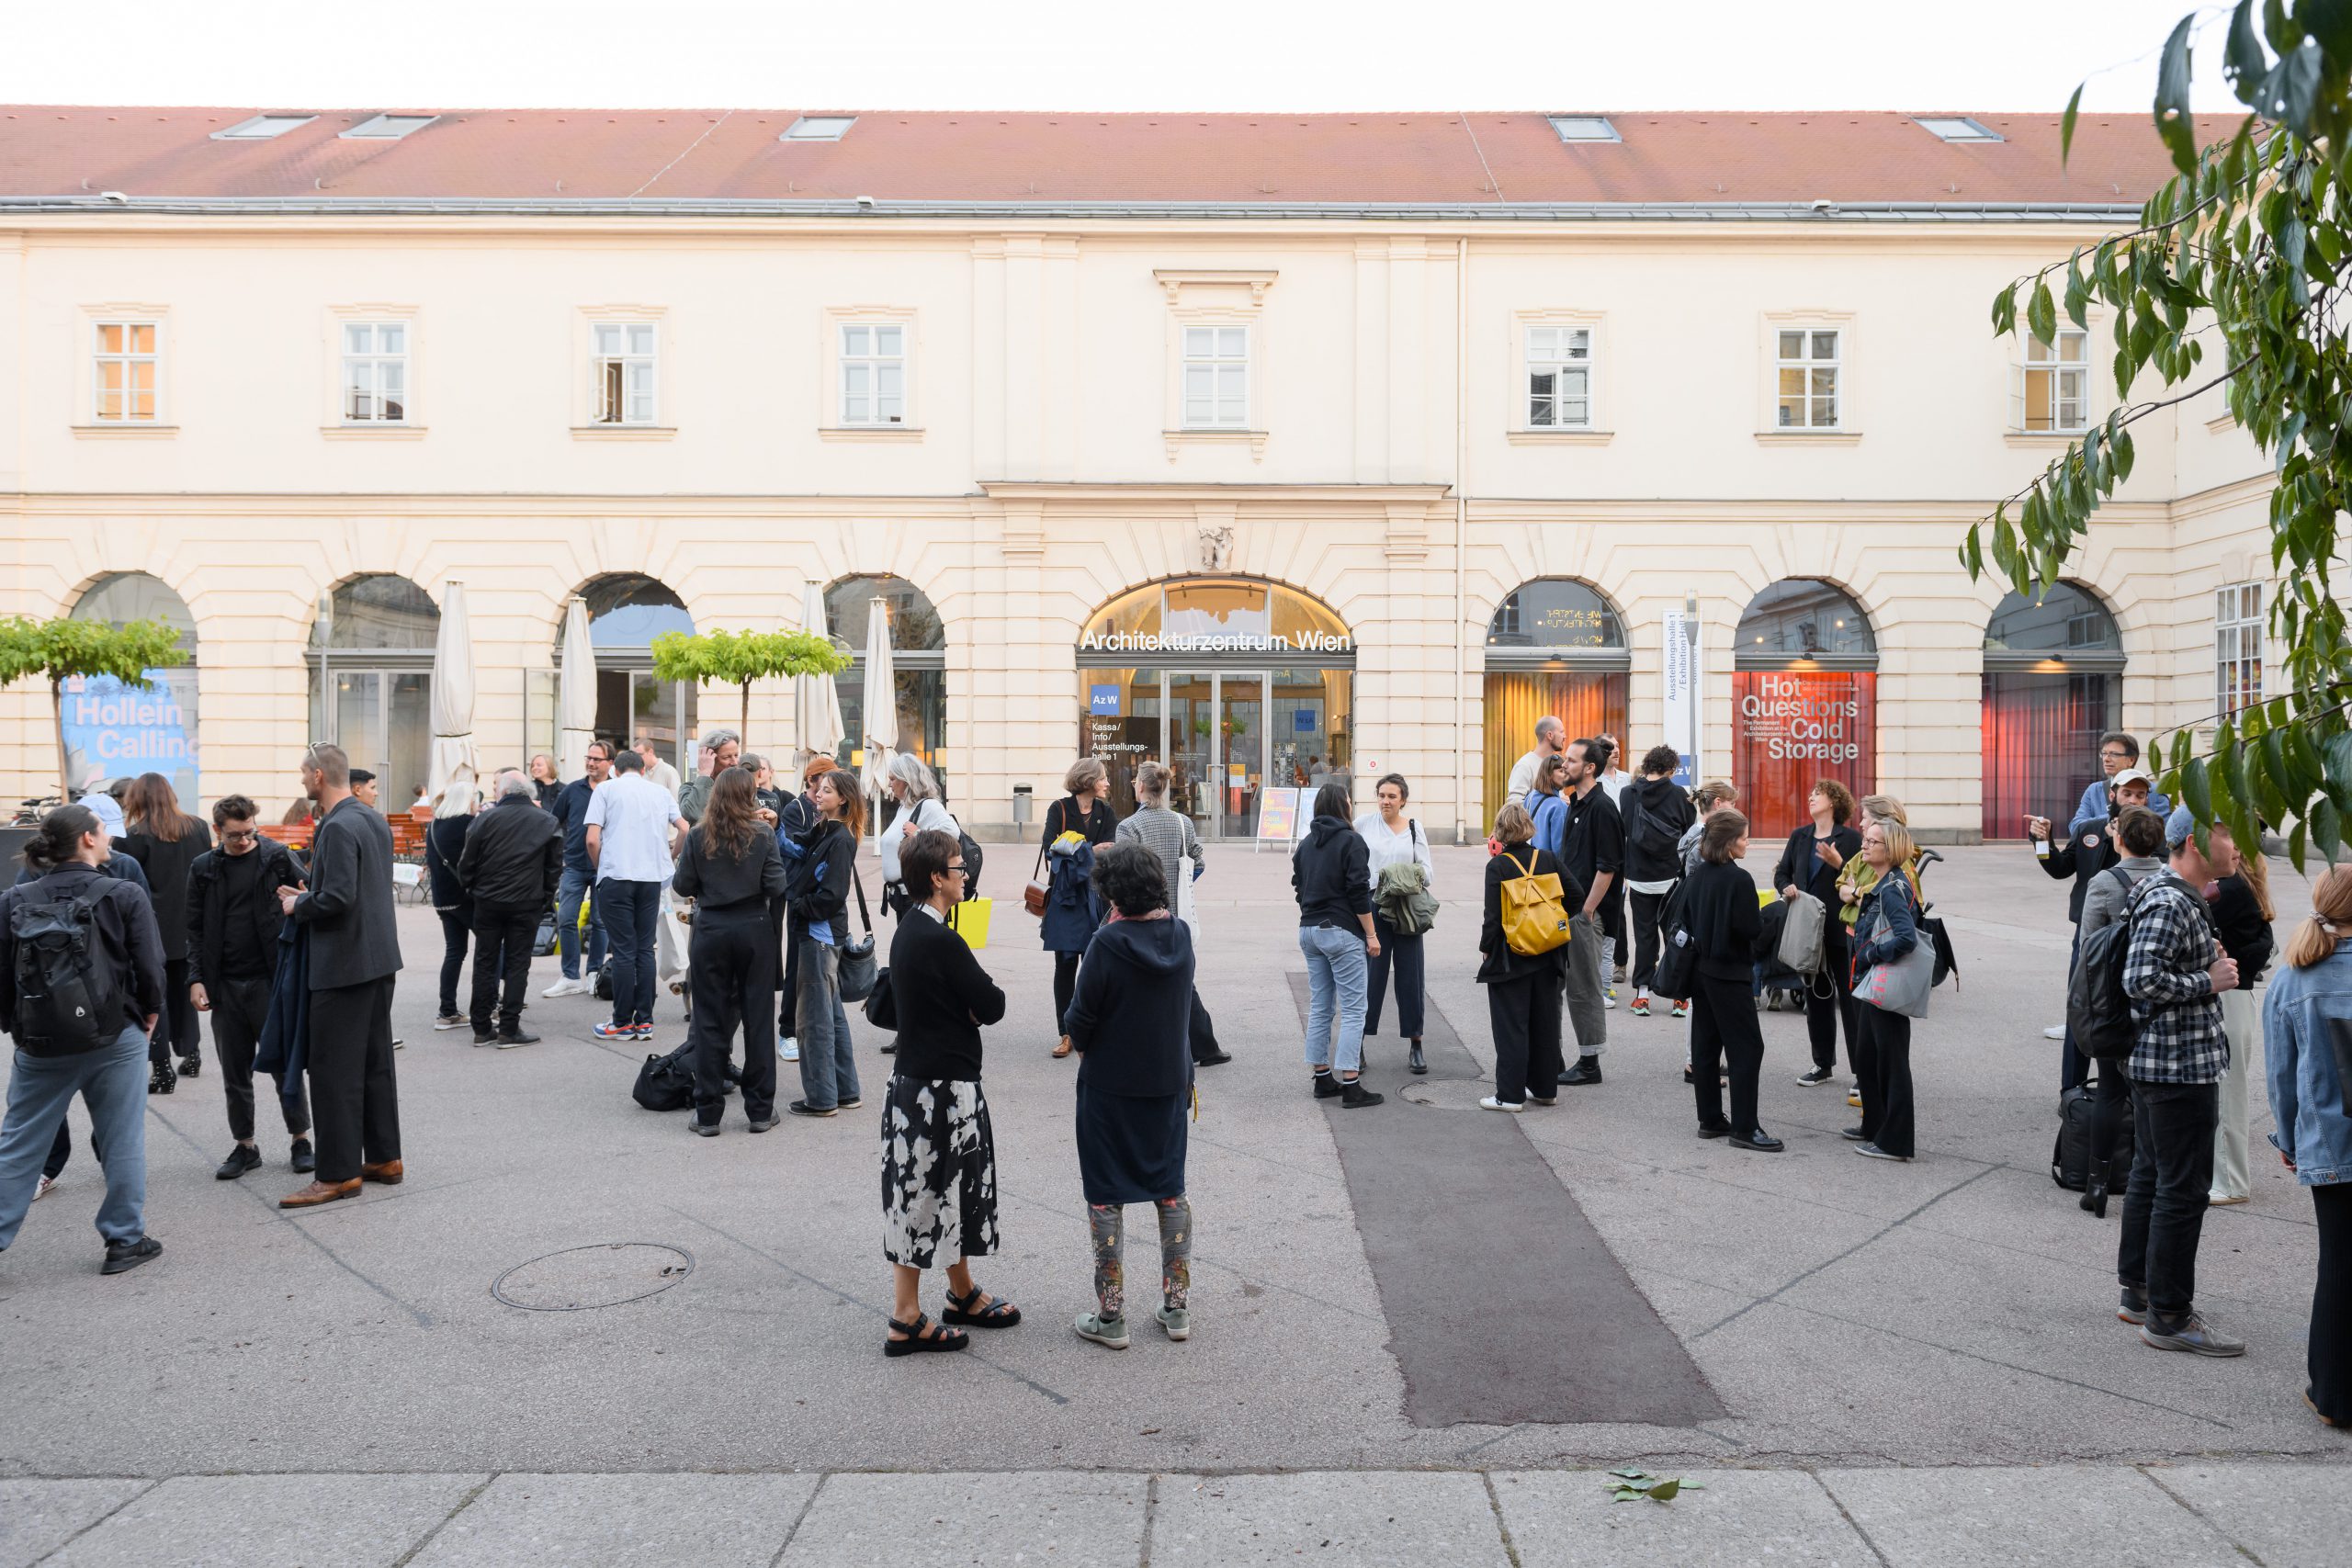 viele Menschen auf einem Platz mit ein paar Bäumen, dahinter eine große Tür darauf steht Architekturzentrum Wien